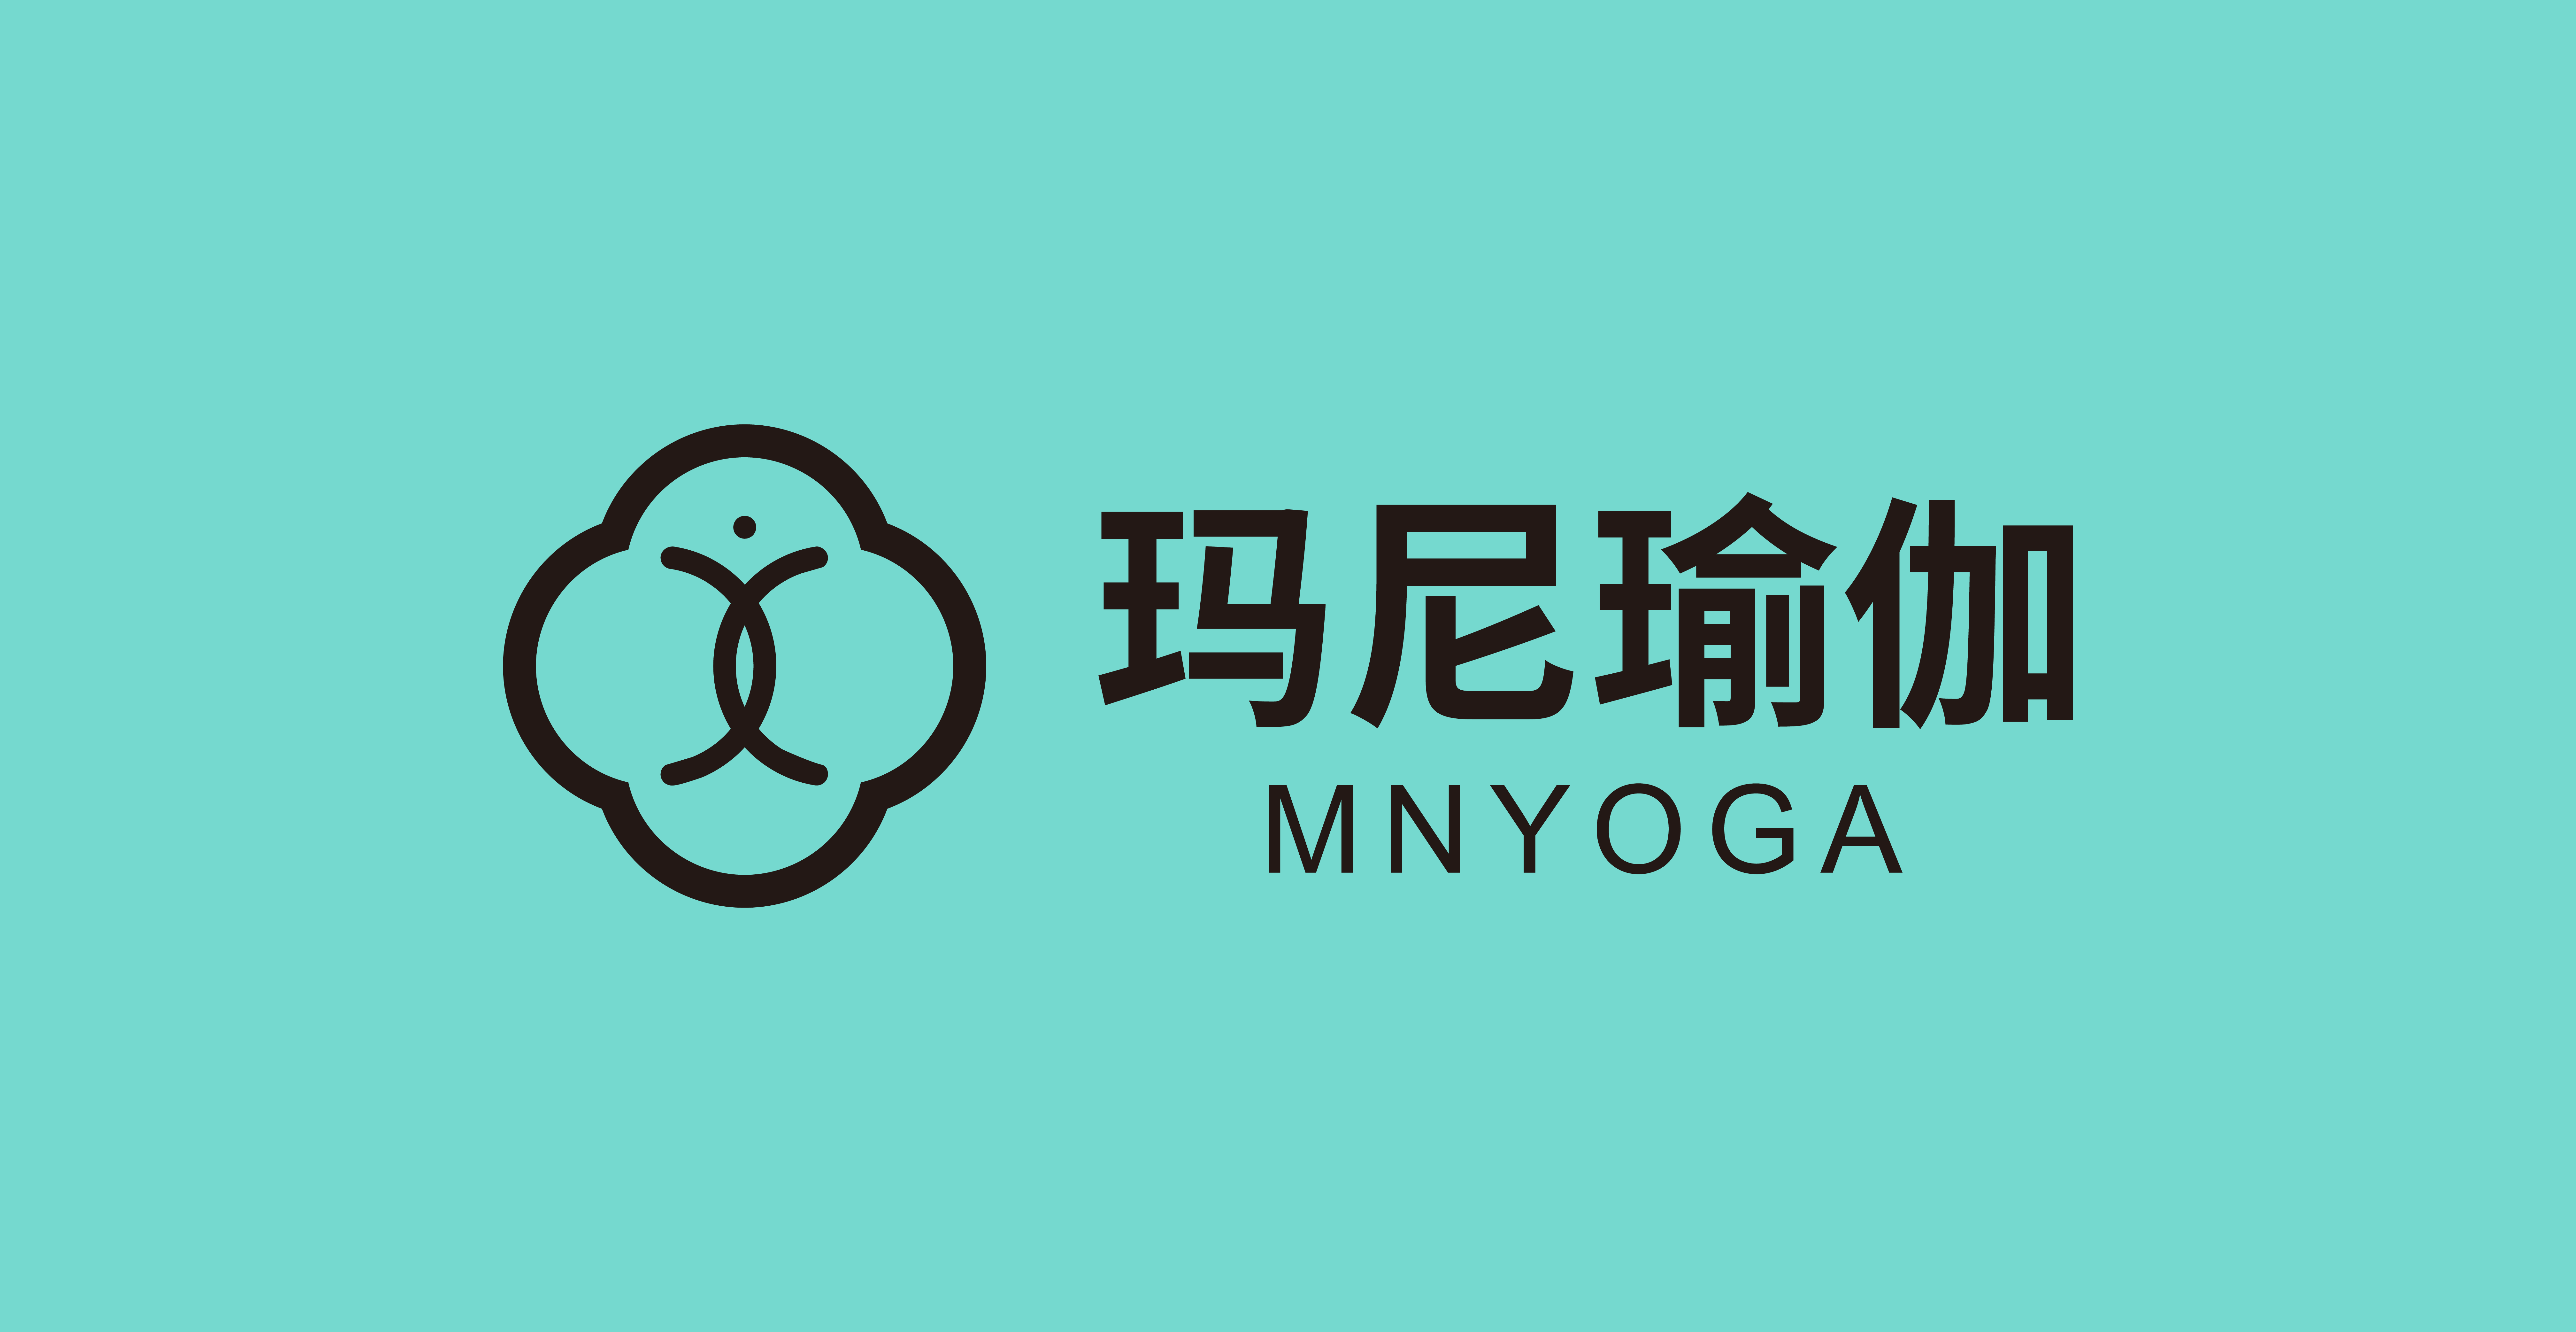 【玛尼瑜伽】全国近百家连锁直营瑜伽品牌，提供苏州无锡上海常州合肥瑜伽体验，寻分销/积分/会员/异业等